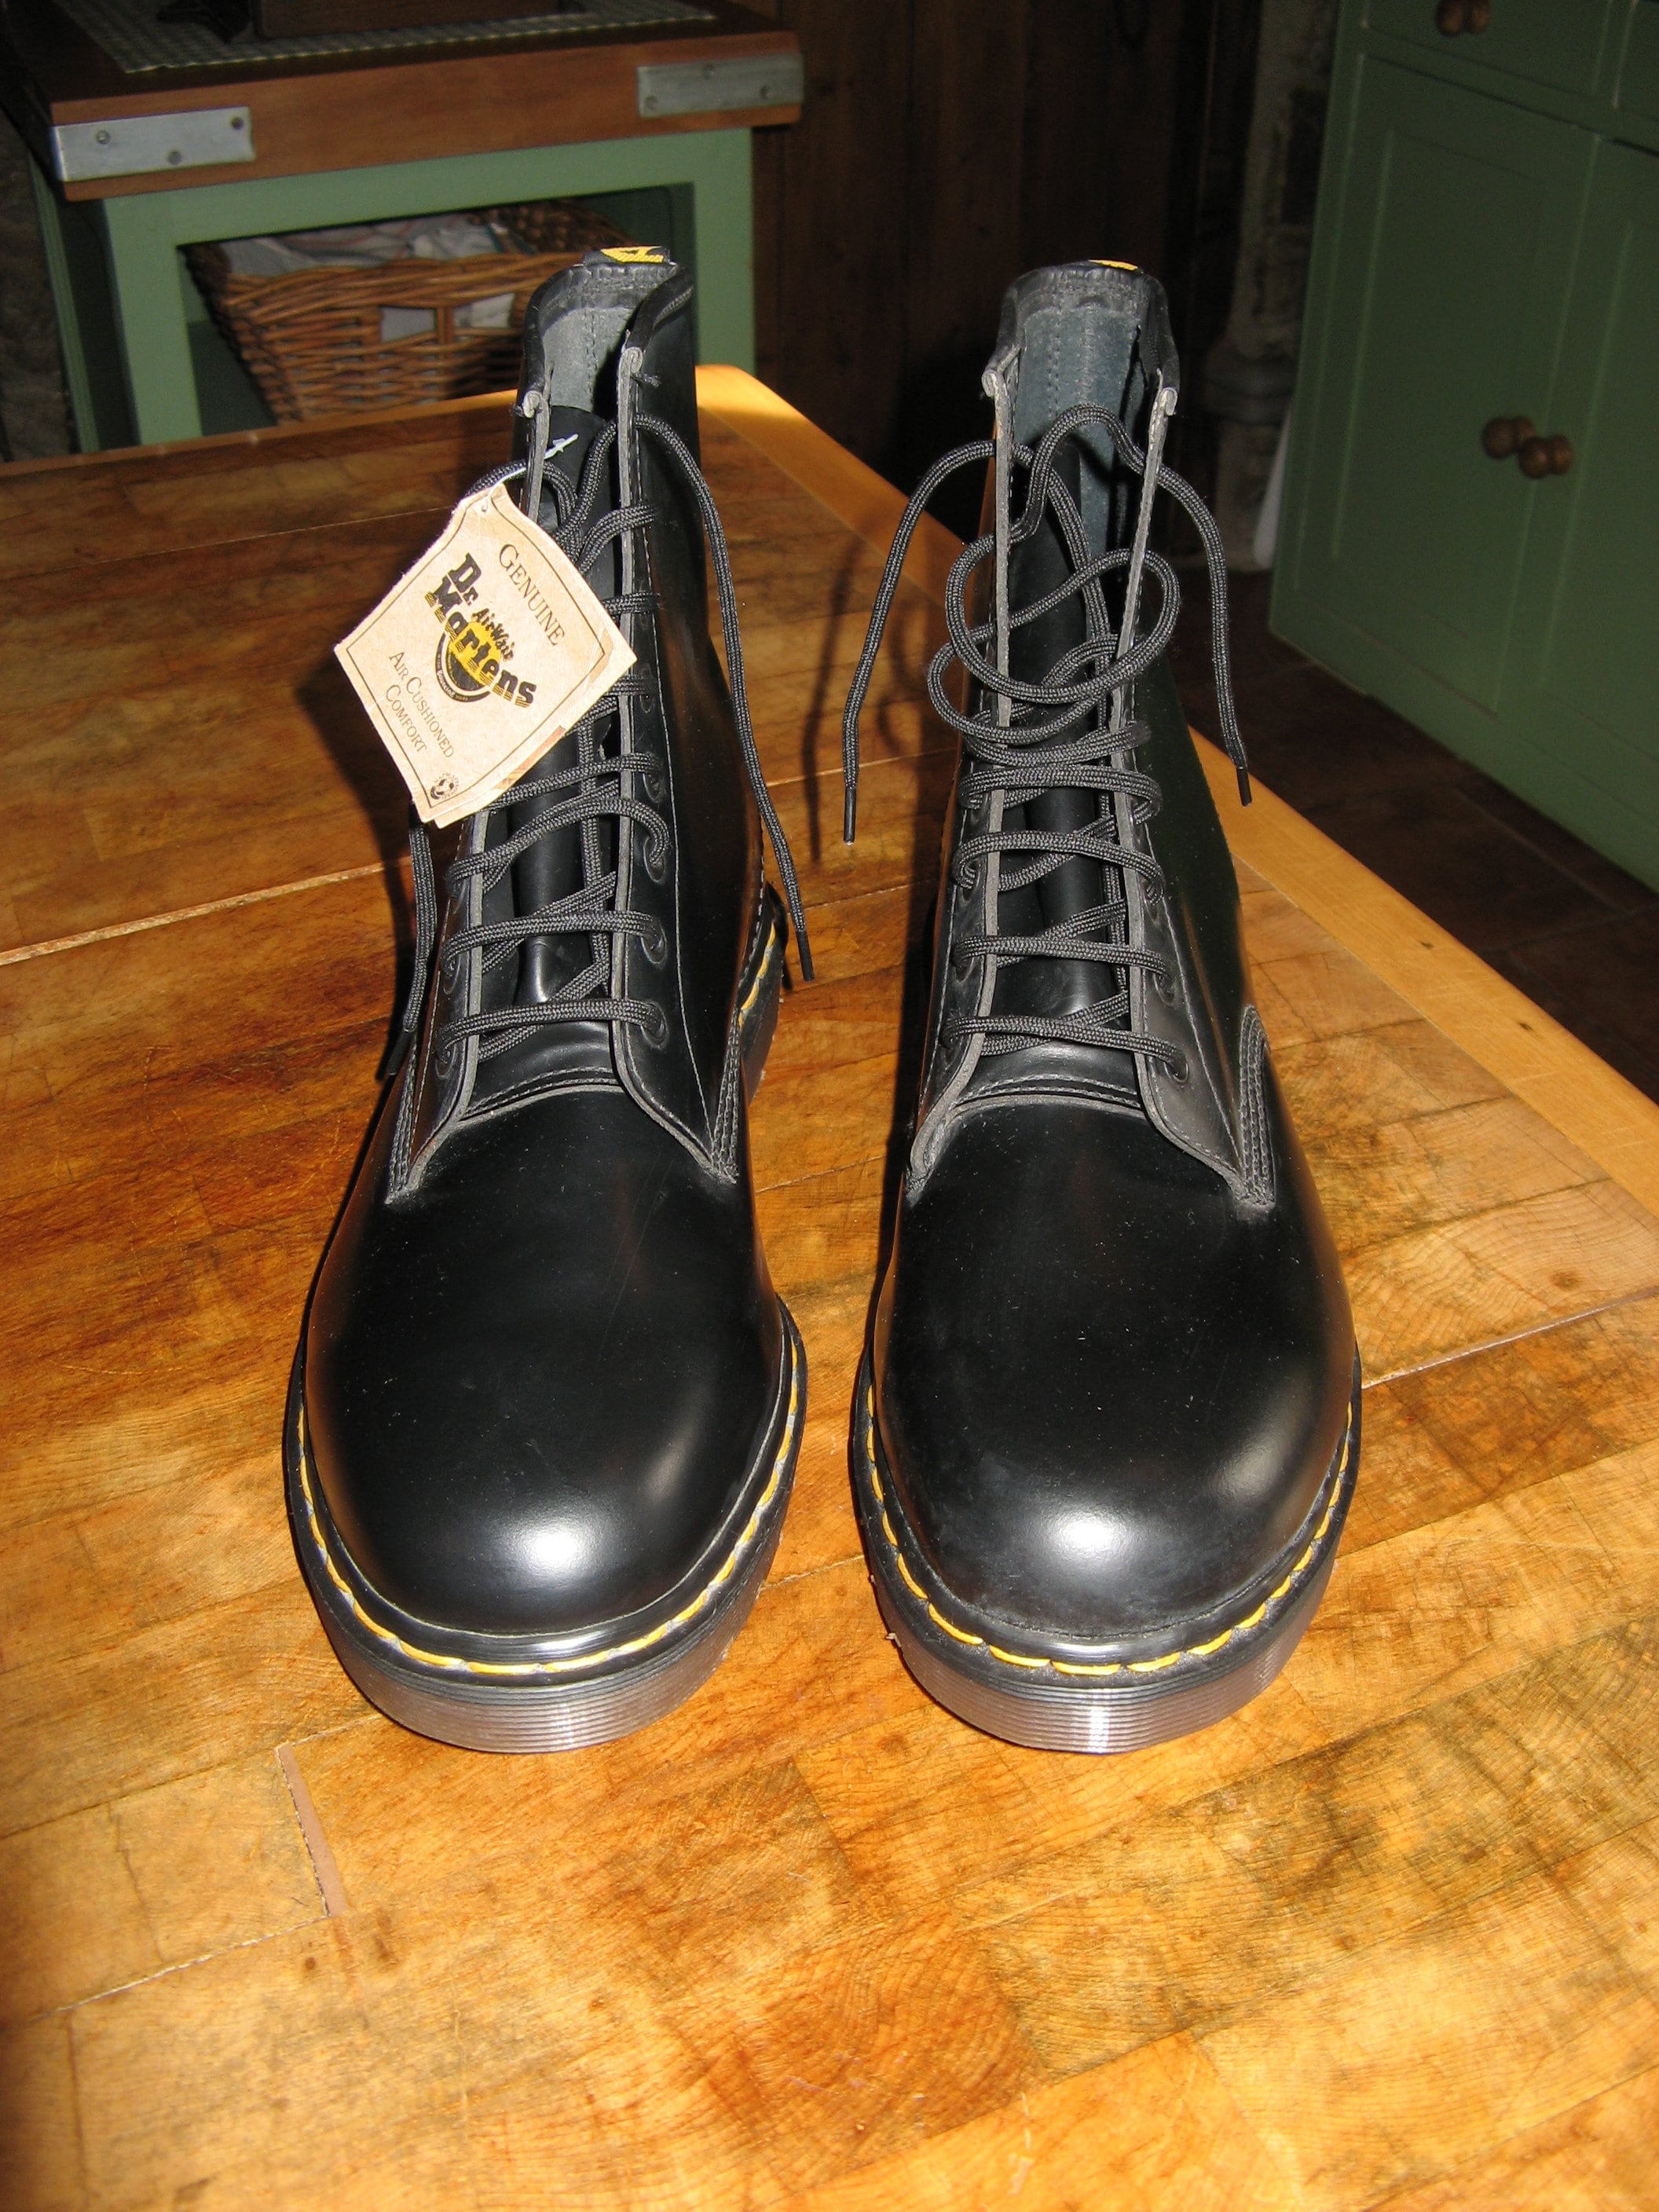 Rare Vintage Leather Dr Martens Boots Size 14 EU 49 - Etsy